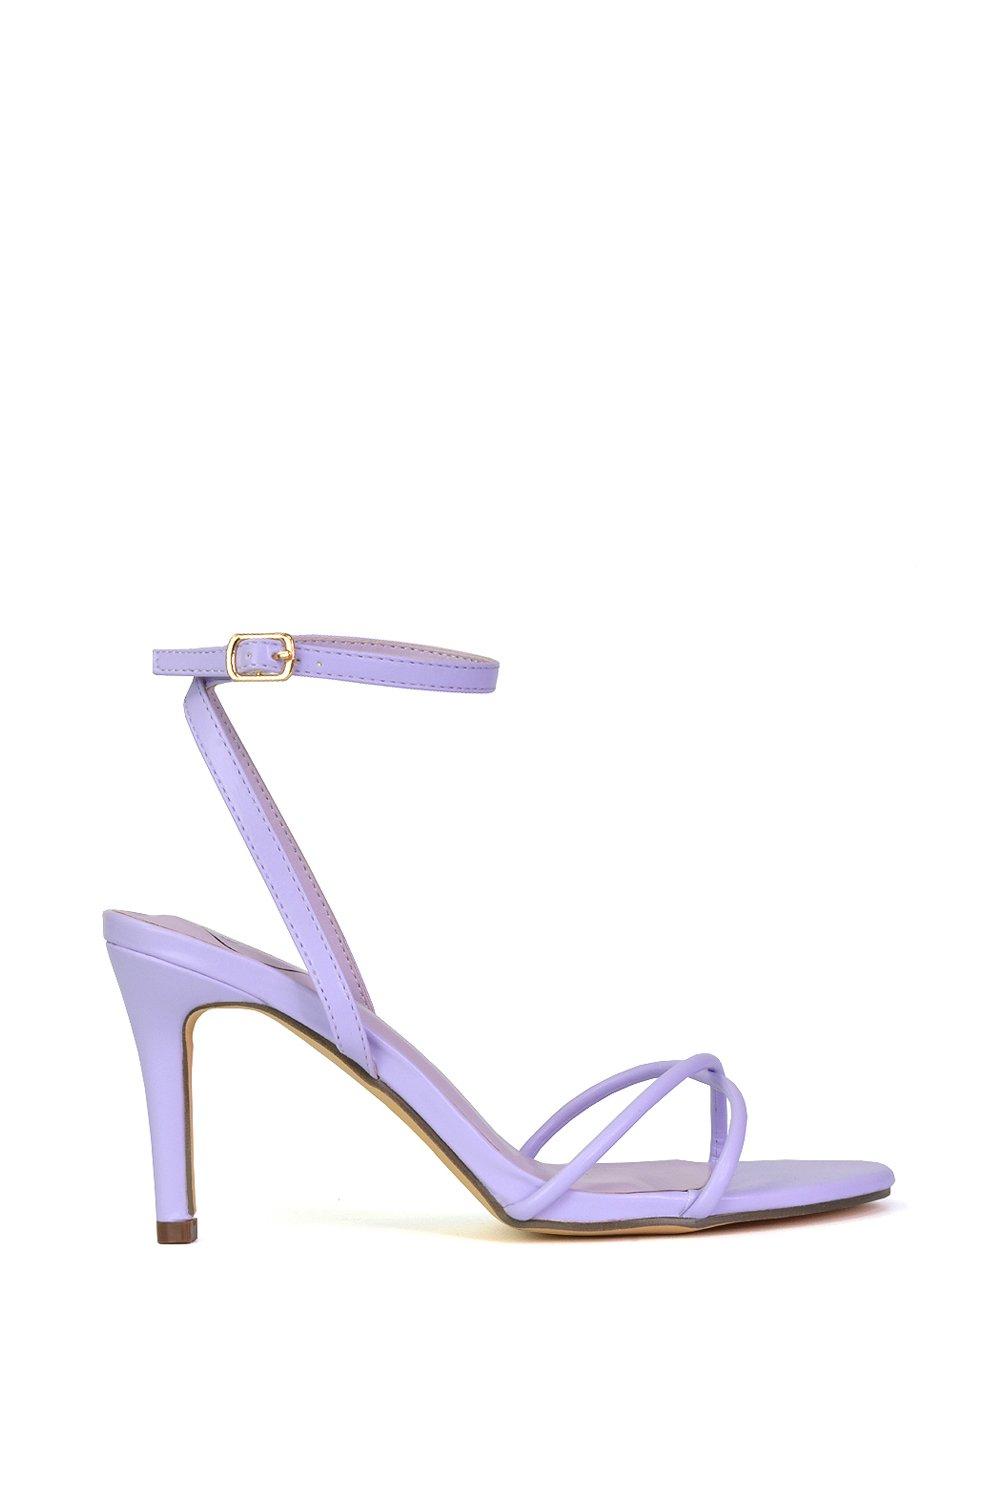 Сандалии Ridge на среднем высоком каблуке-шпильке с круглым носком и ремешками XY London, фиолетовый